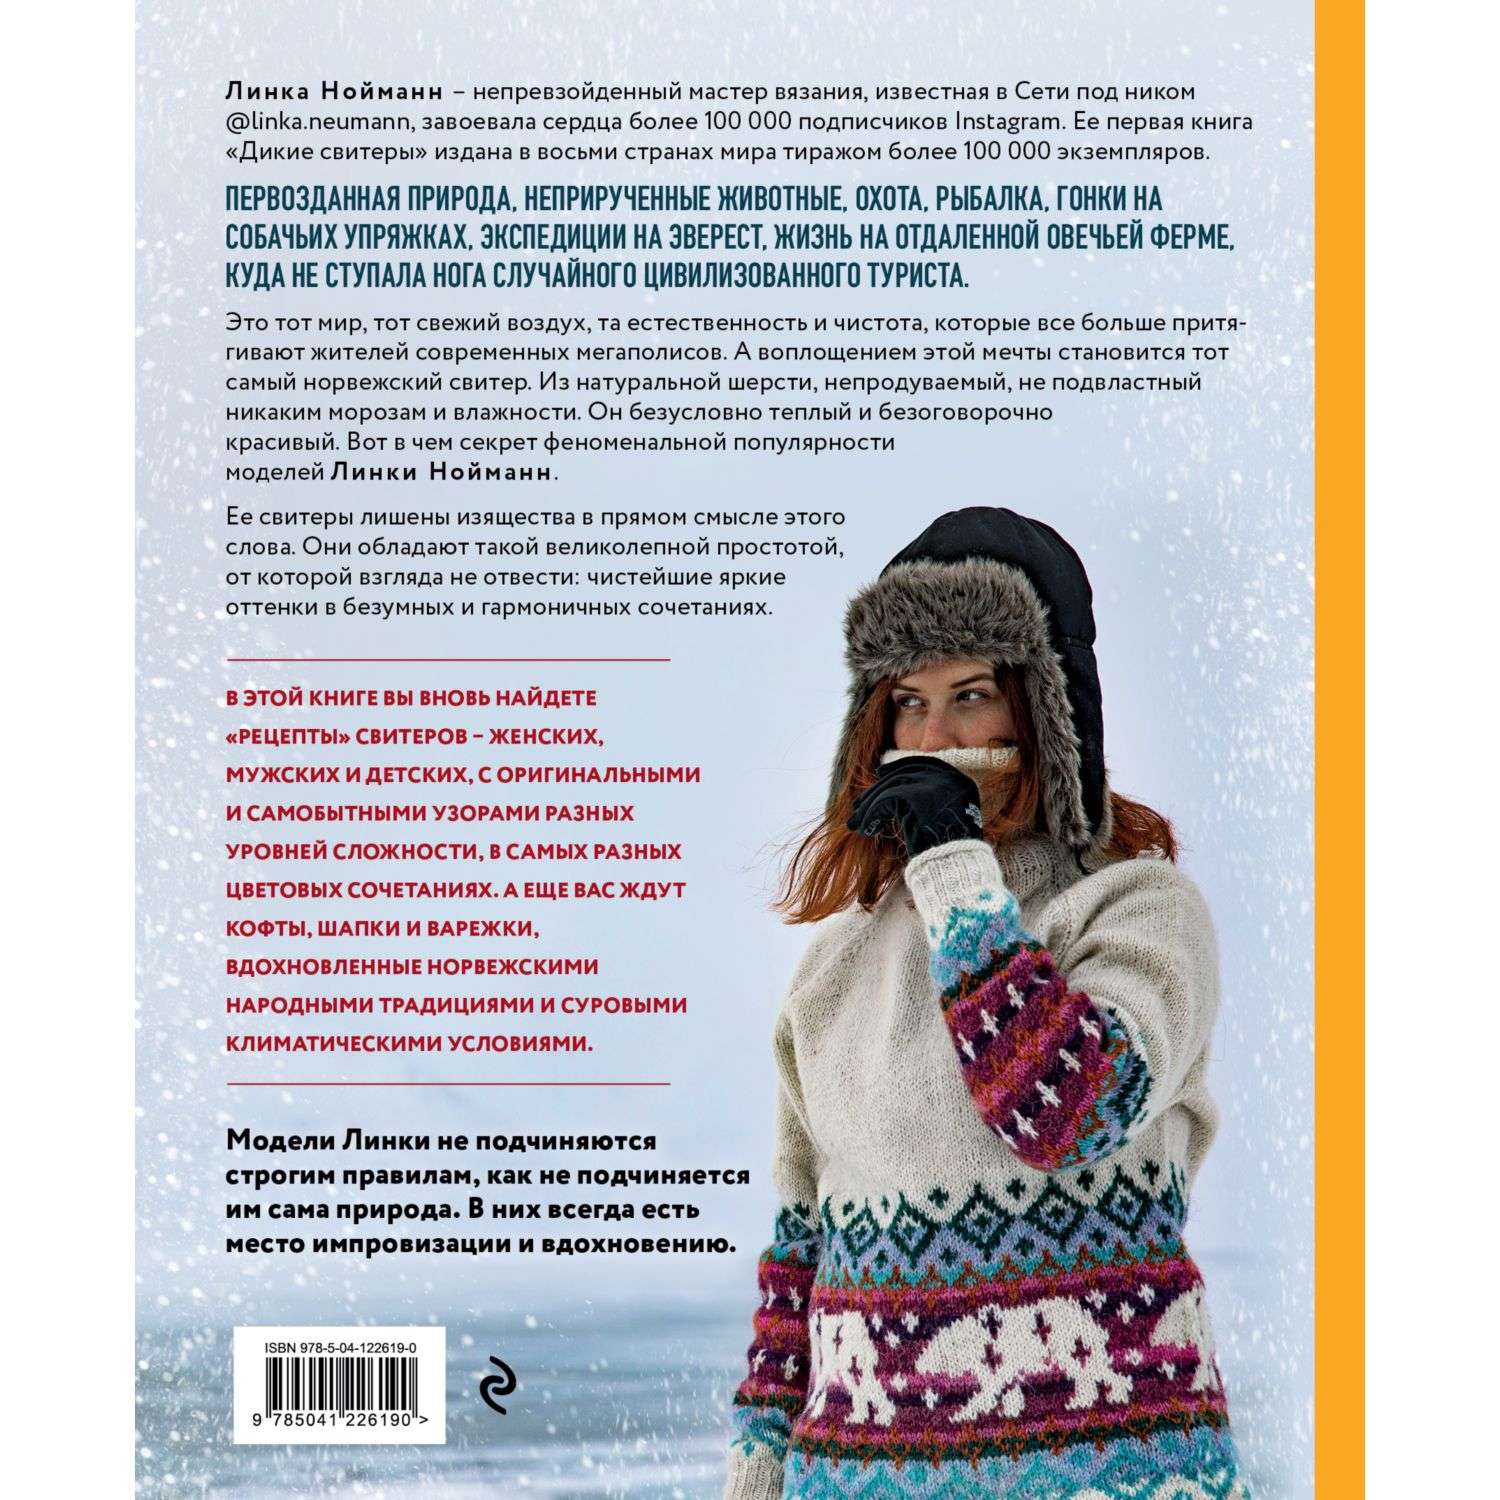 Книга БОМБОРА Дикие свитеры 2 Новая коллекция для искателей приключений всех возрастов - фото 10